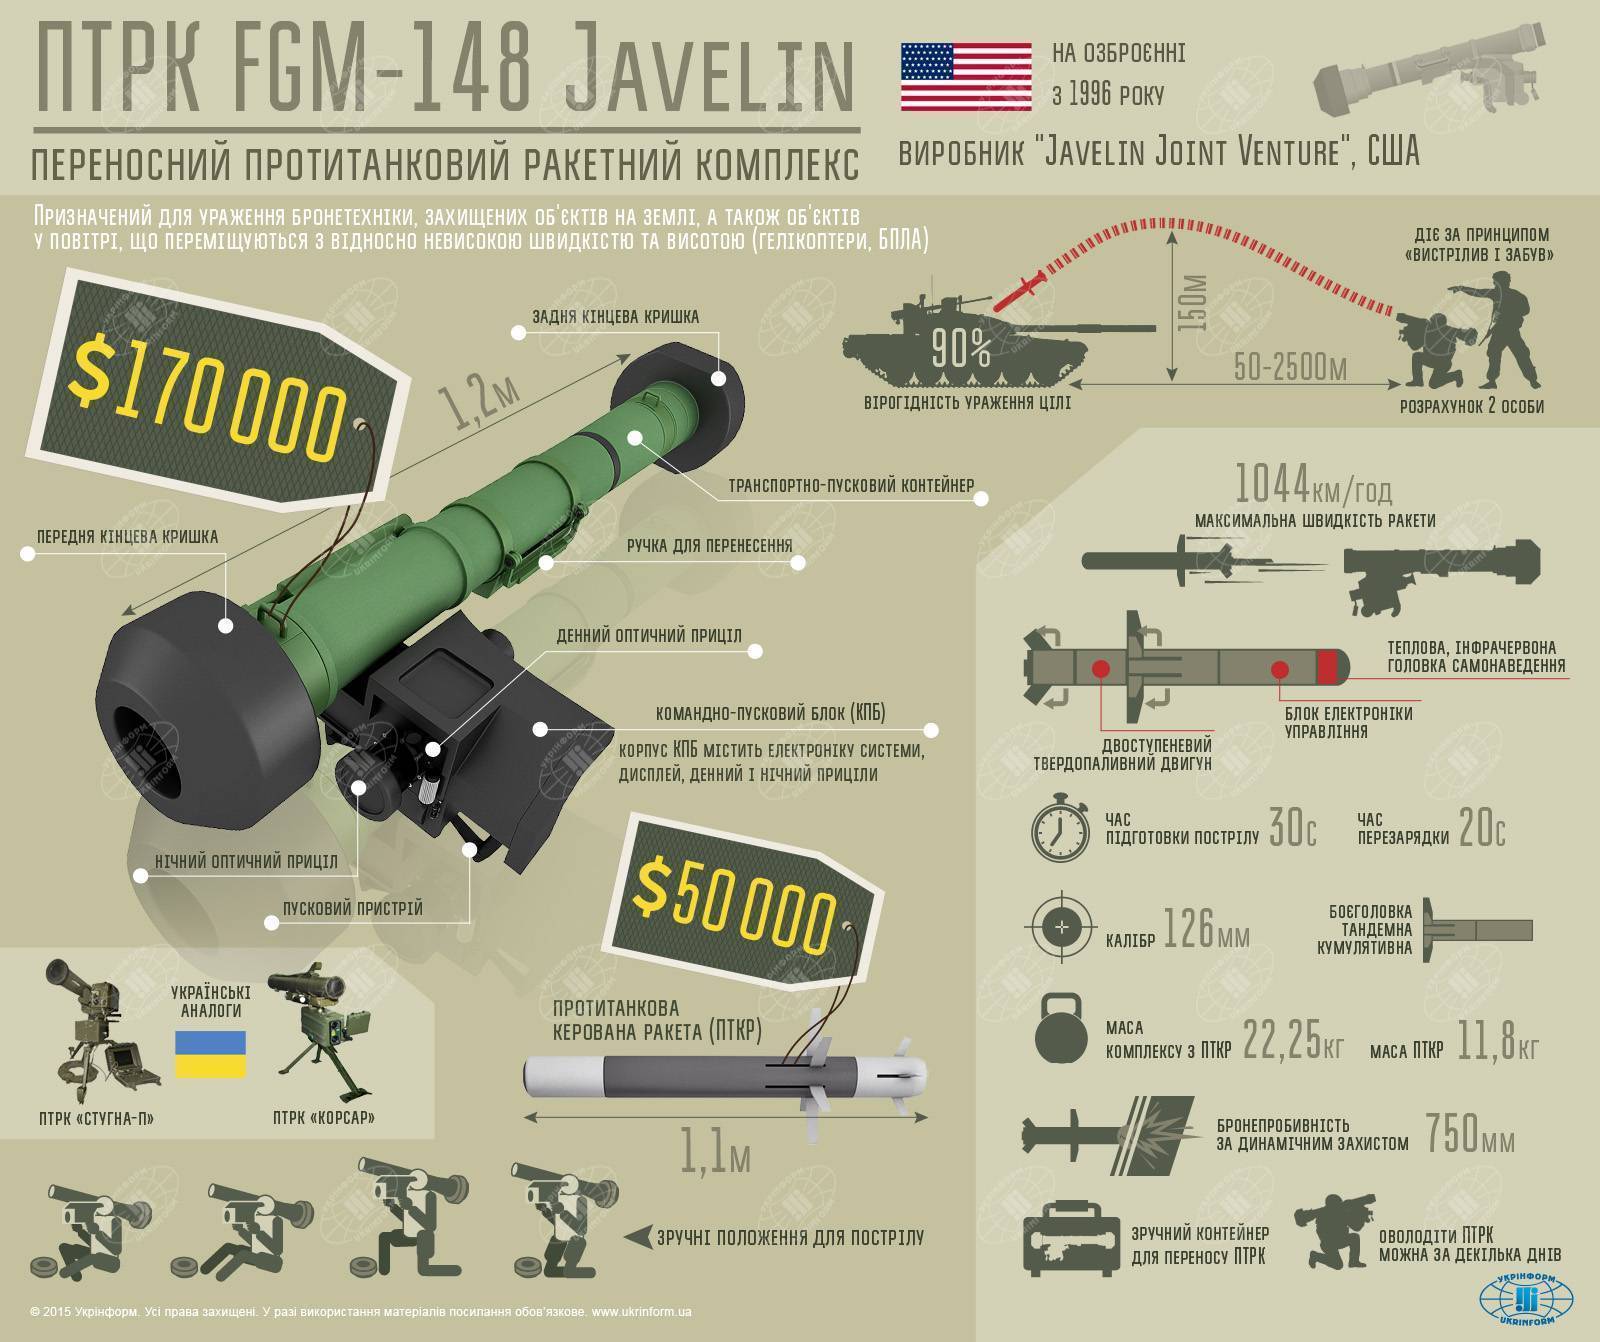 Fgm 148 javelin: противотанковый ракетный комплекс джавелин, американский птрк, технические характеристики